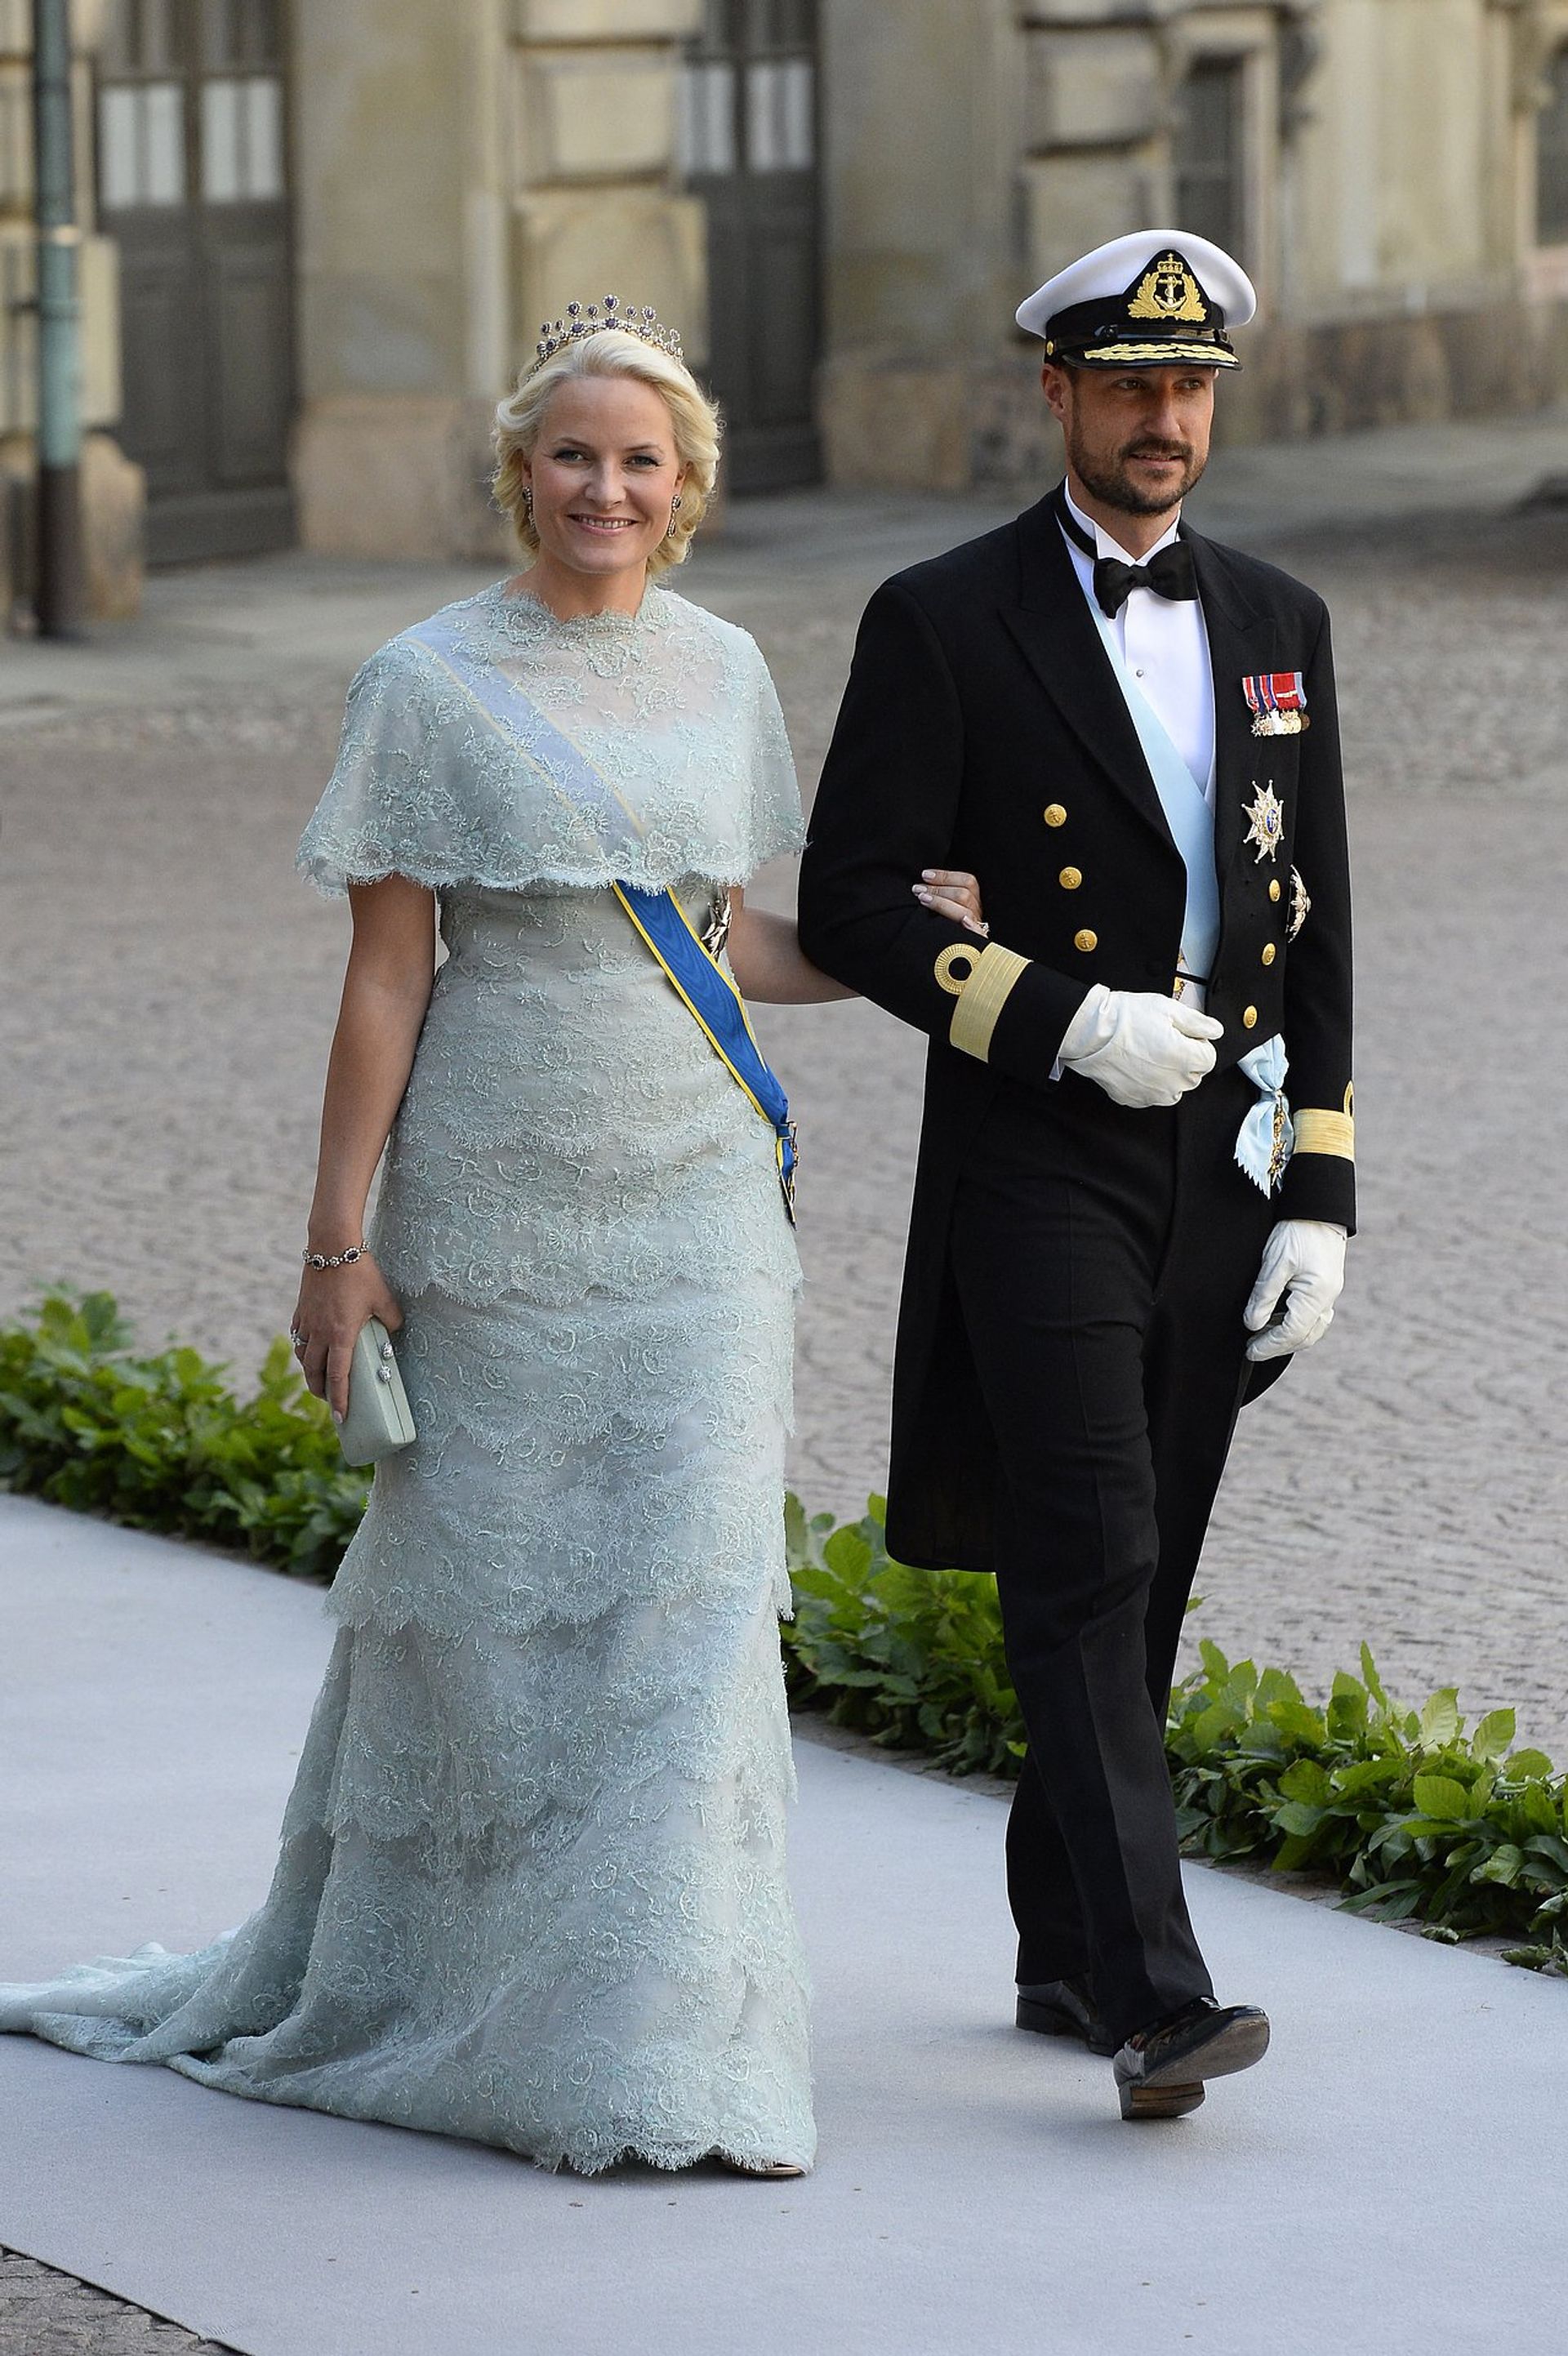 Mette-Marit en Haakon bij het huwelijk van de Zweedse prinses Madeleine met Chris O'Neill.